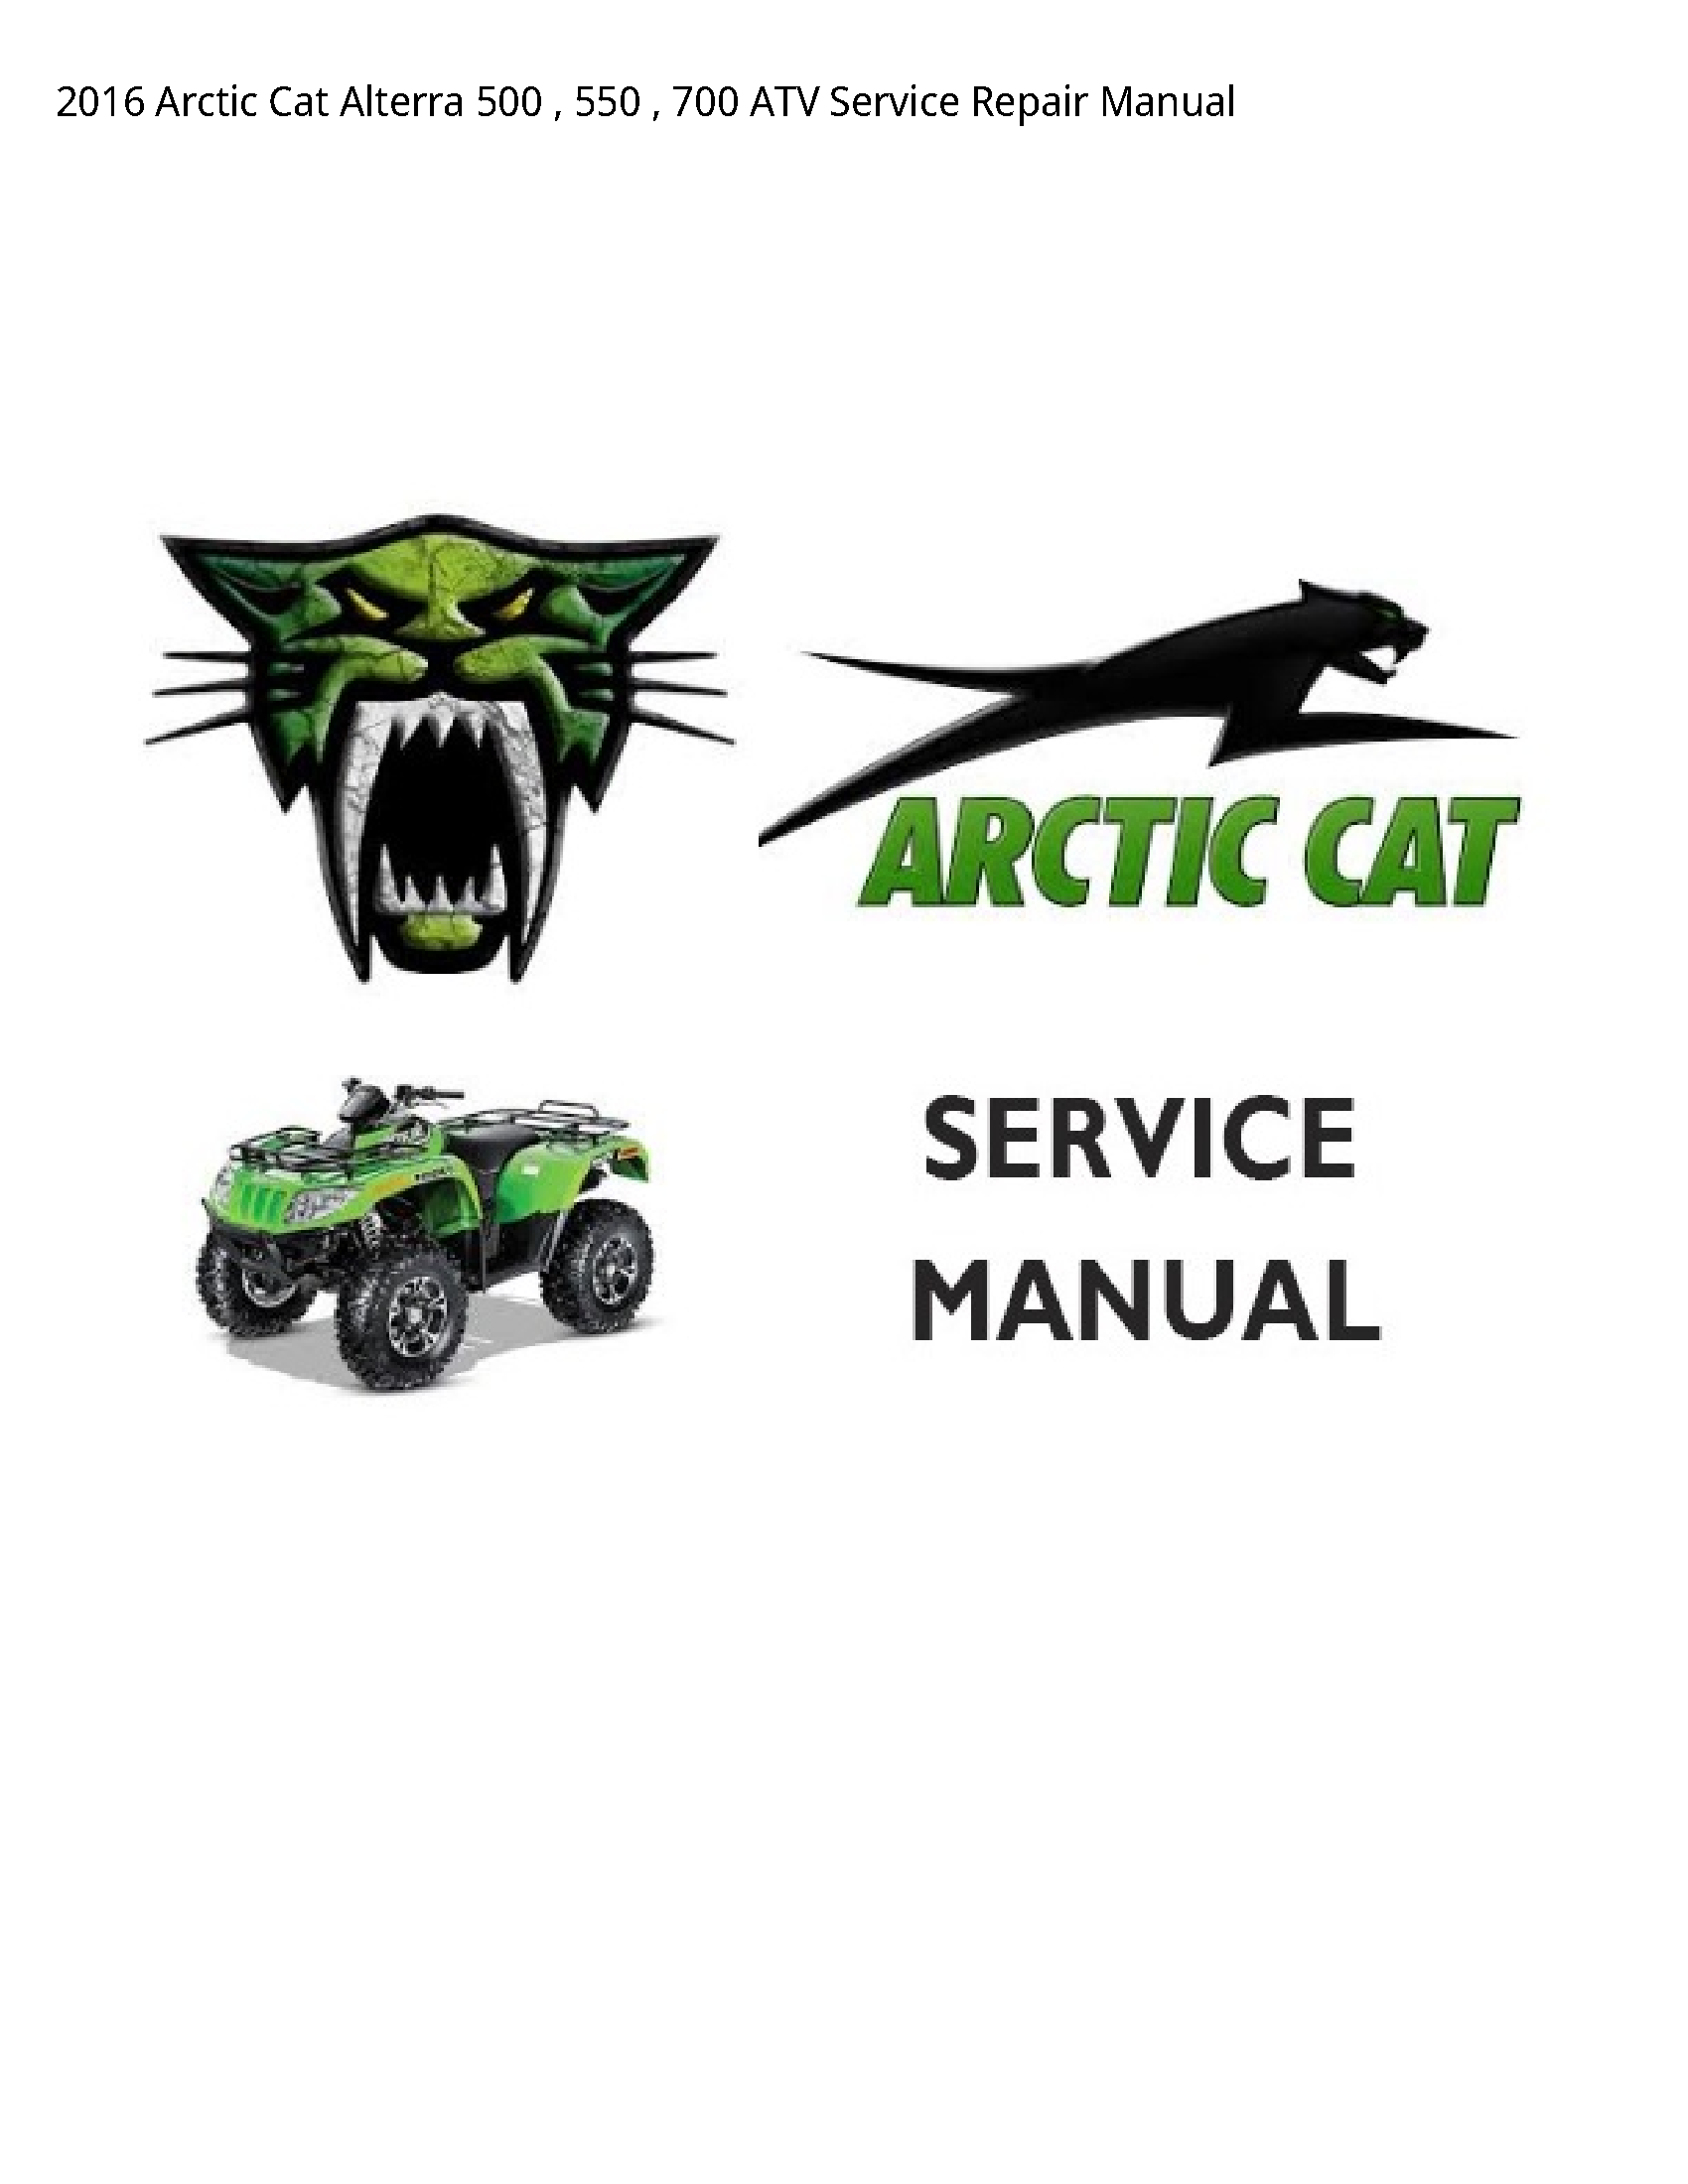 Arctic Cat 500 Alterra ATV manual